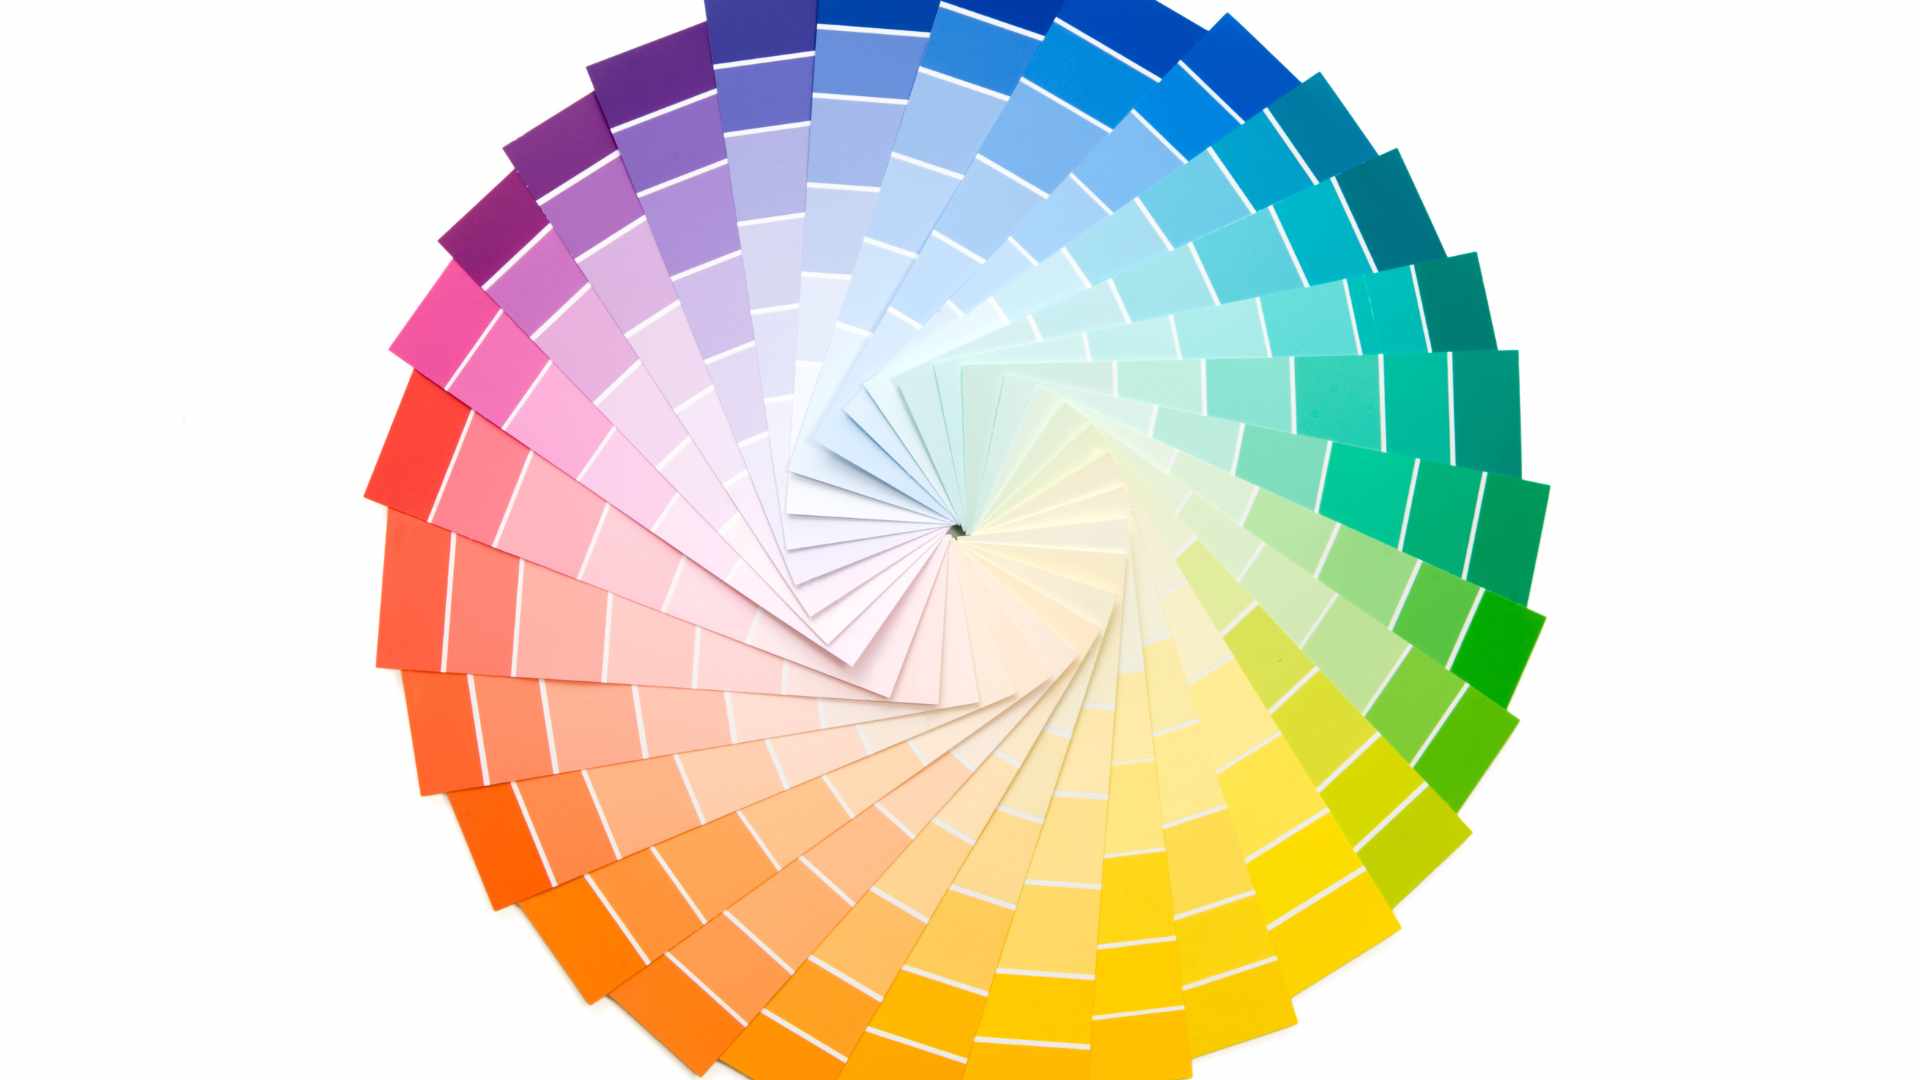 Circulo cromatico y paletas de colores.